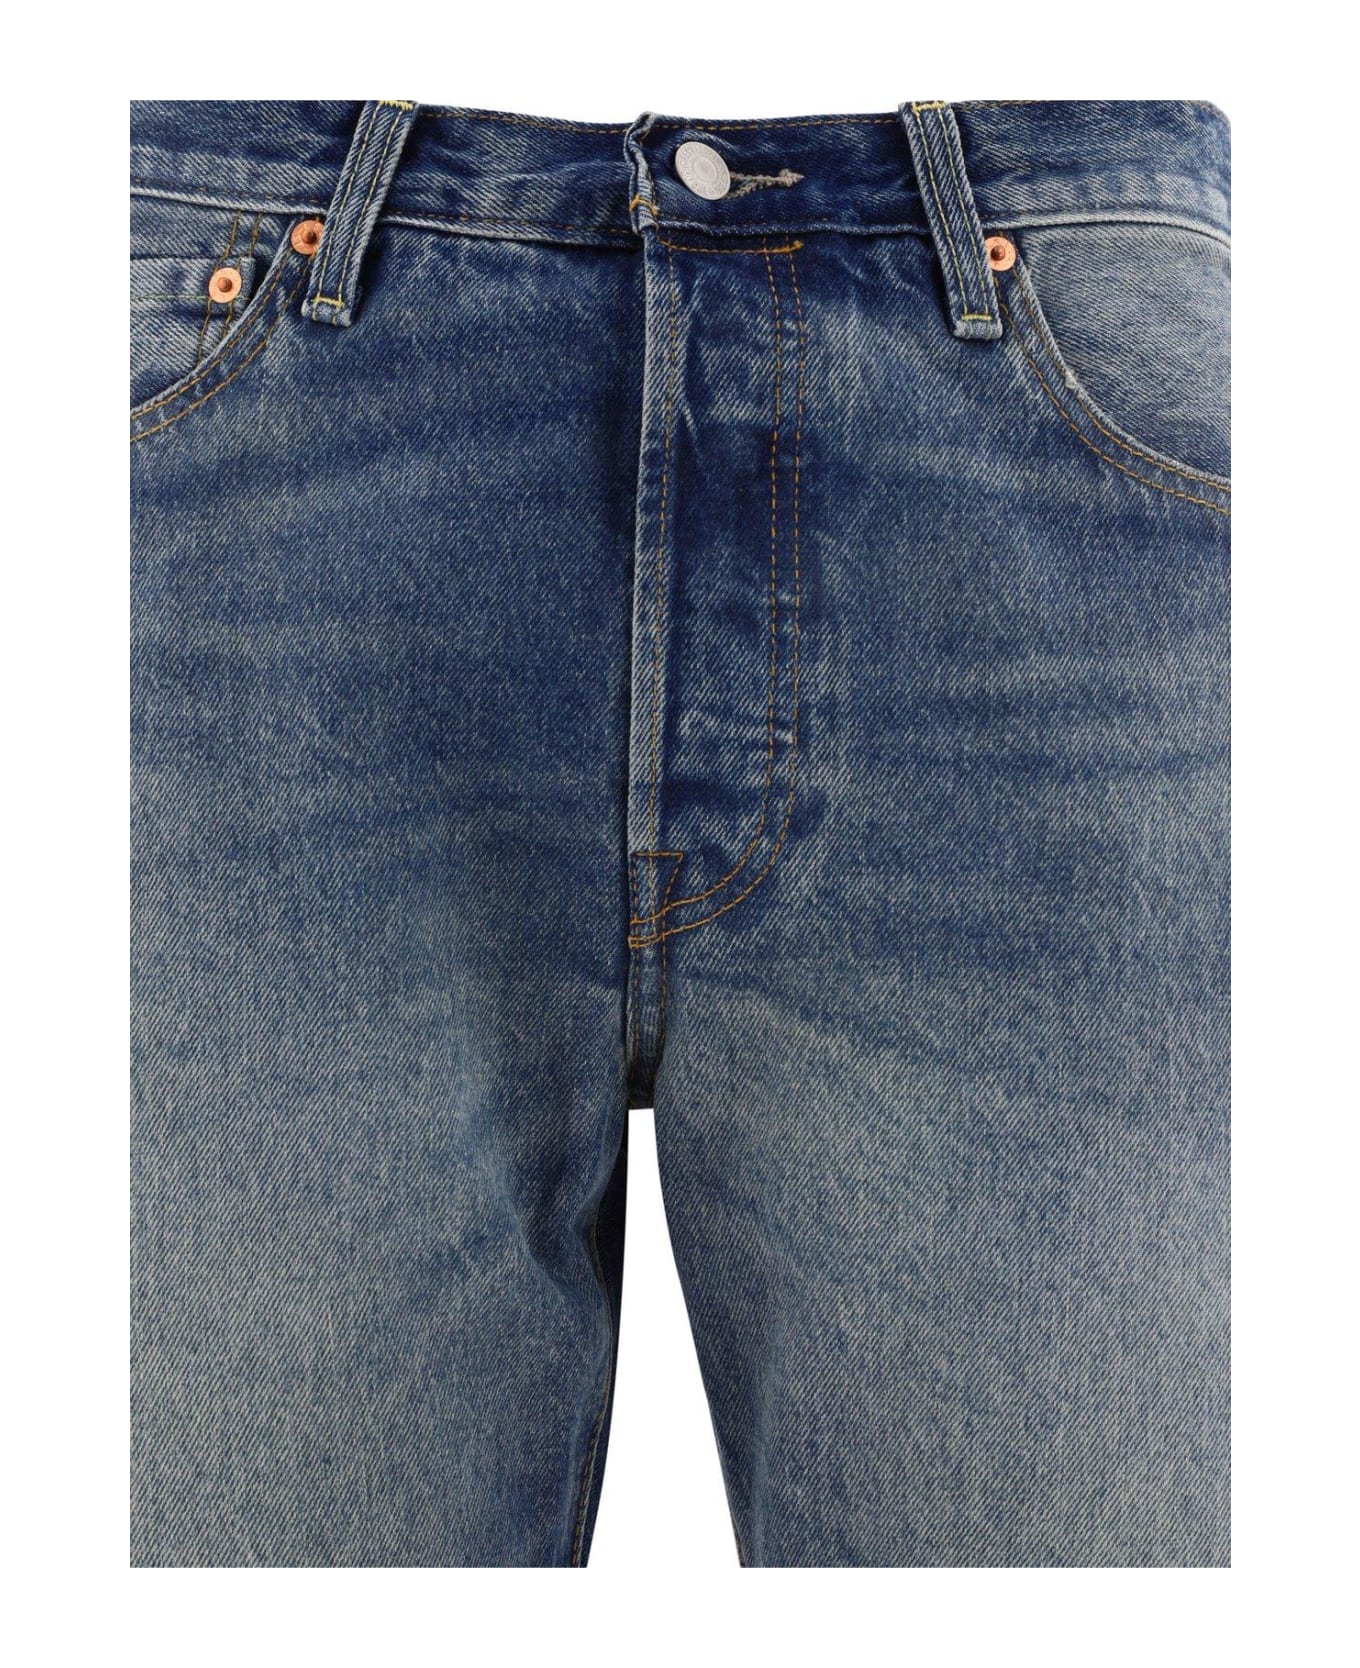 Levi's 501 '54 Mid Rise Denim Jeans - Blue